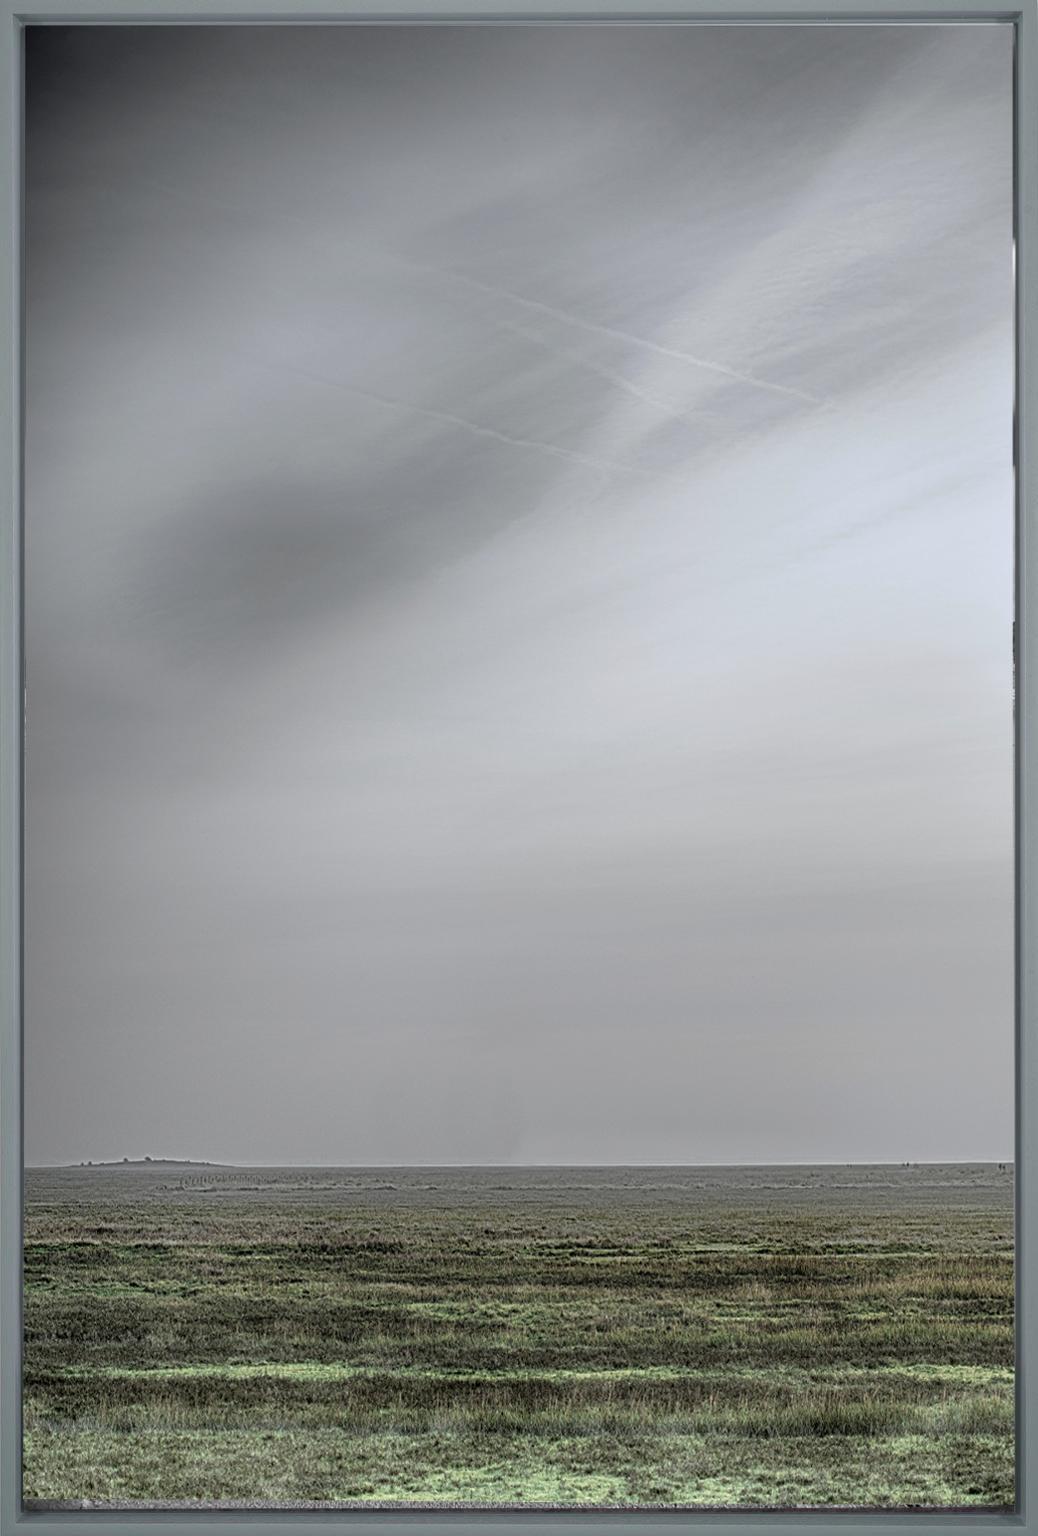 Michael Götze Landscape Photograph - Wide End - contemporary landscape photography of open land with grey skies